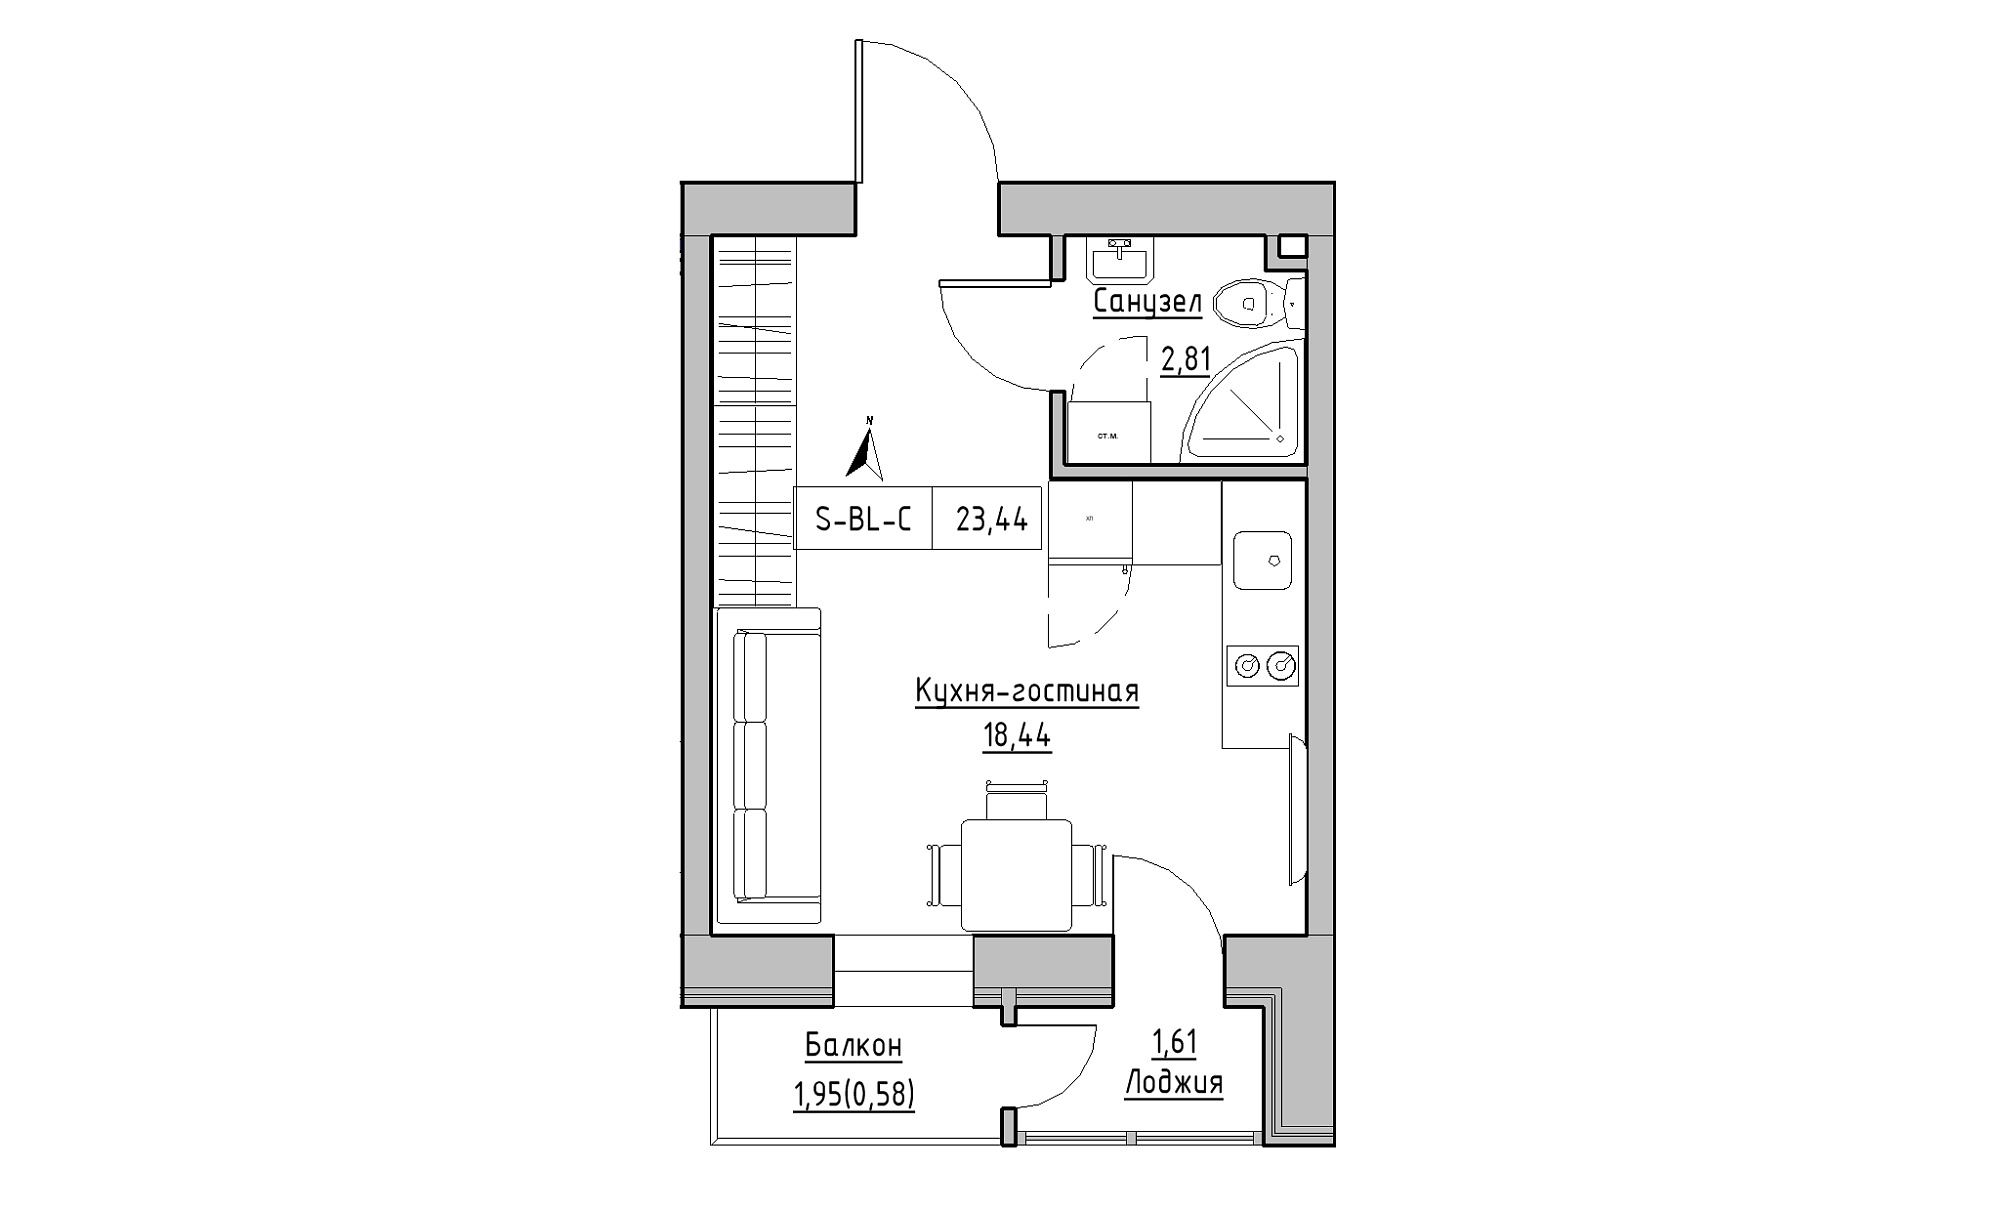 Планування Smart-квартира площею 23.44м2, KS-023-03/0013.